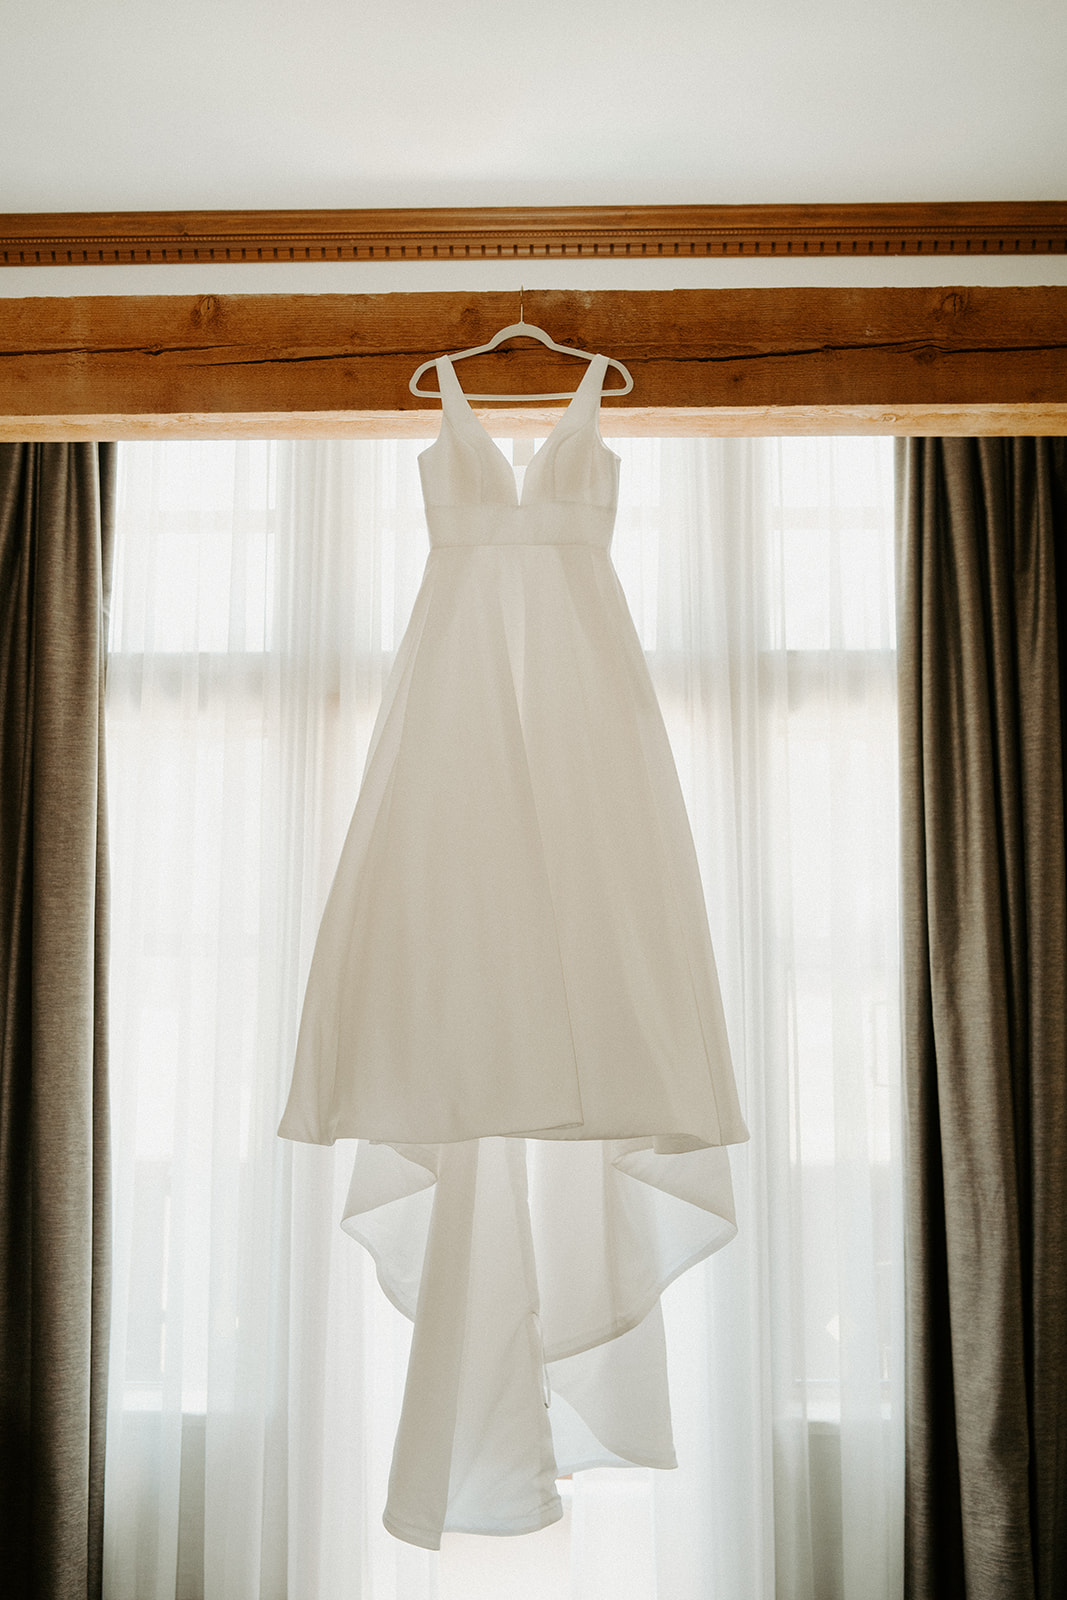 Sun Peaks Mountain Resort Wedding Photos, Dress Hanging Shot